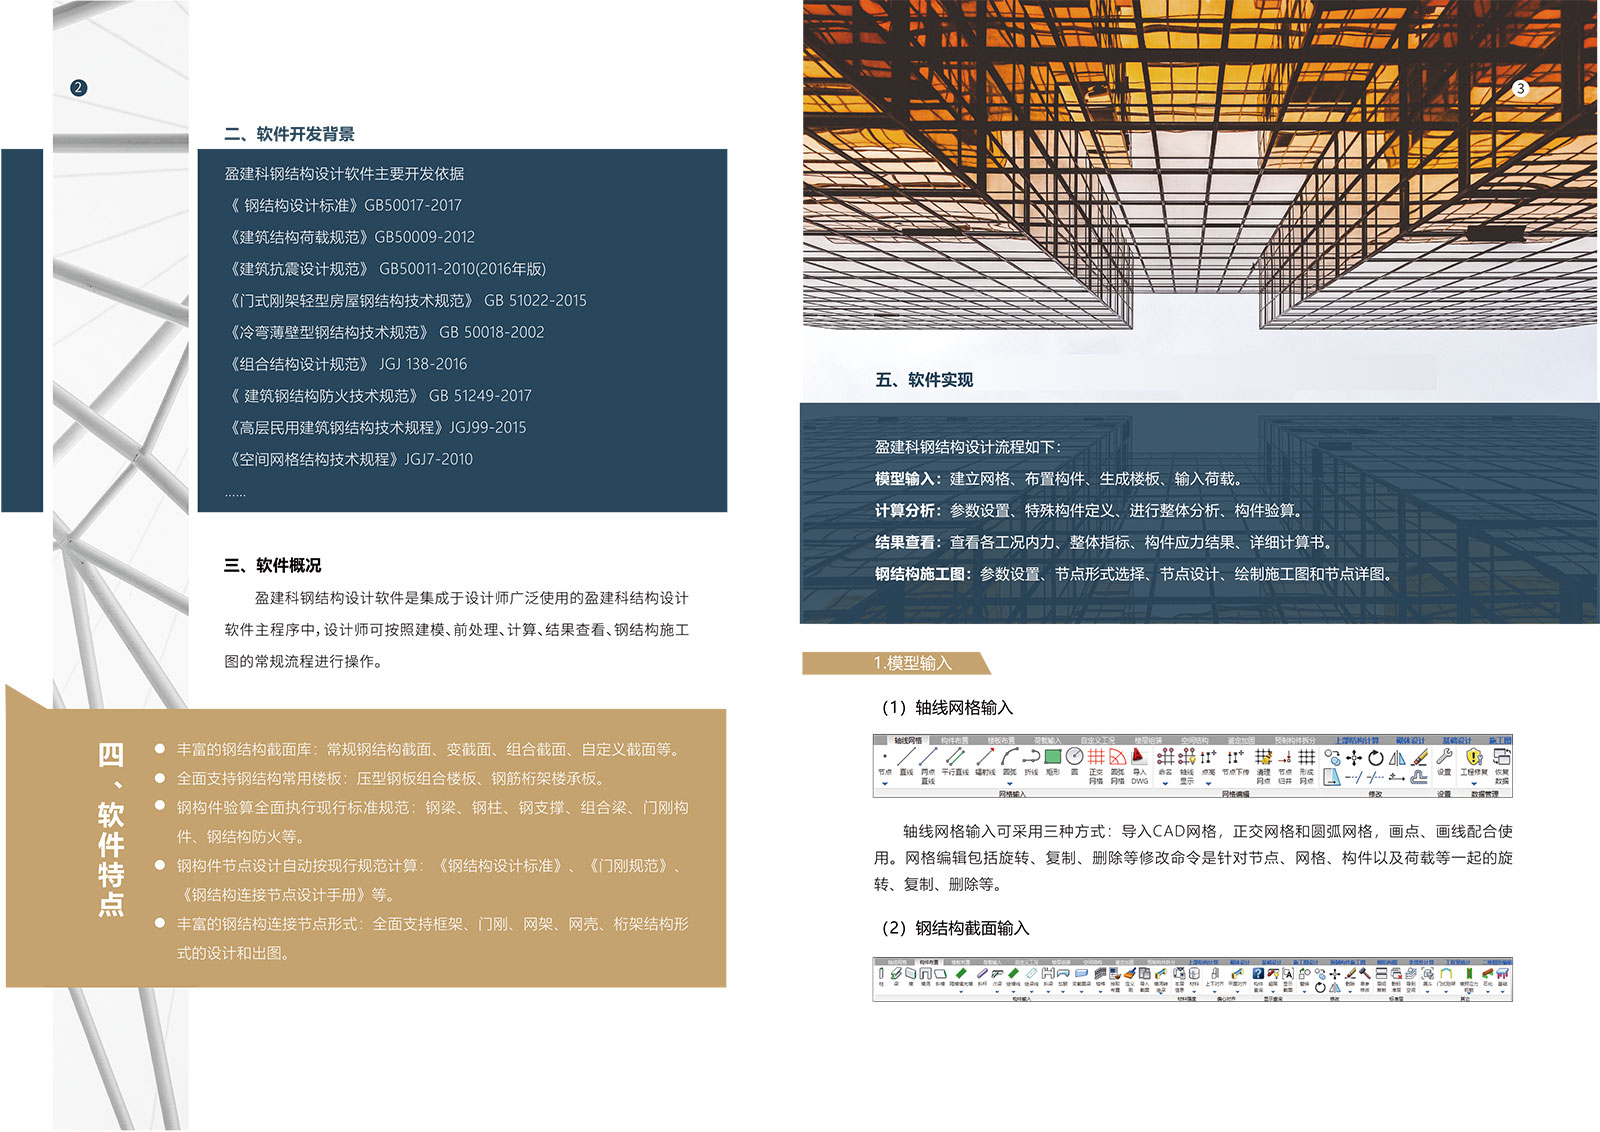 盈建科钢结构设计软件彩页-3.jpg